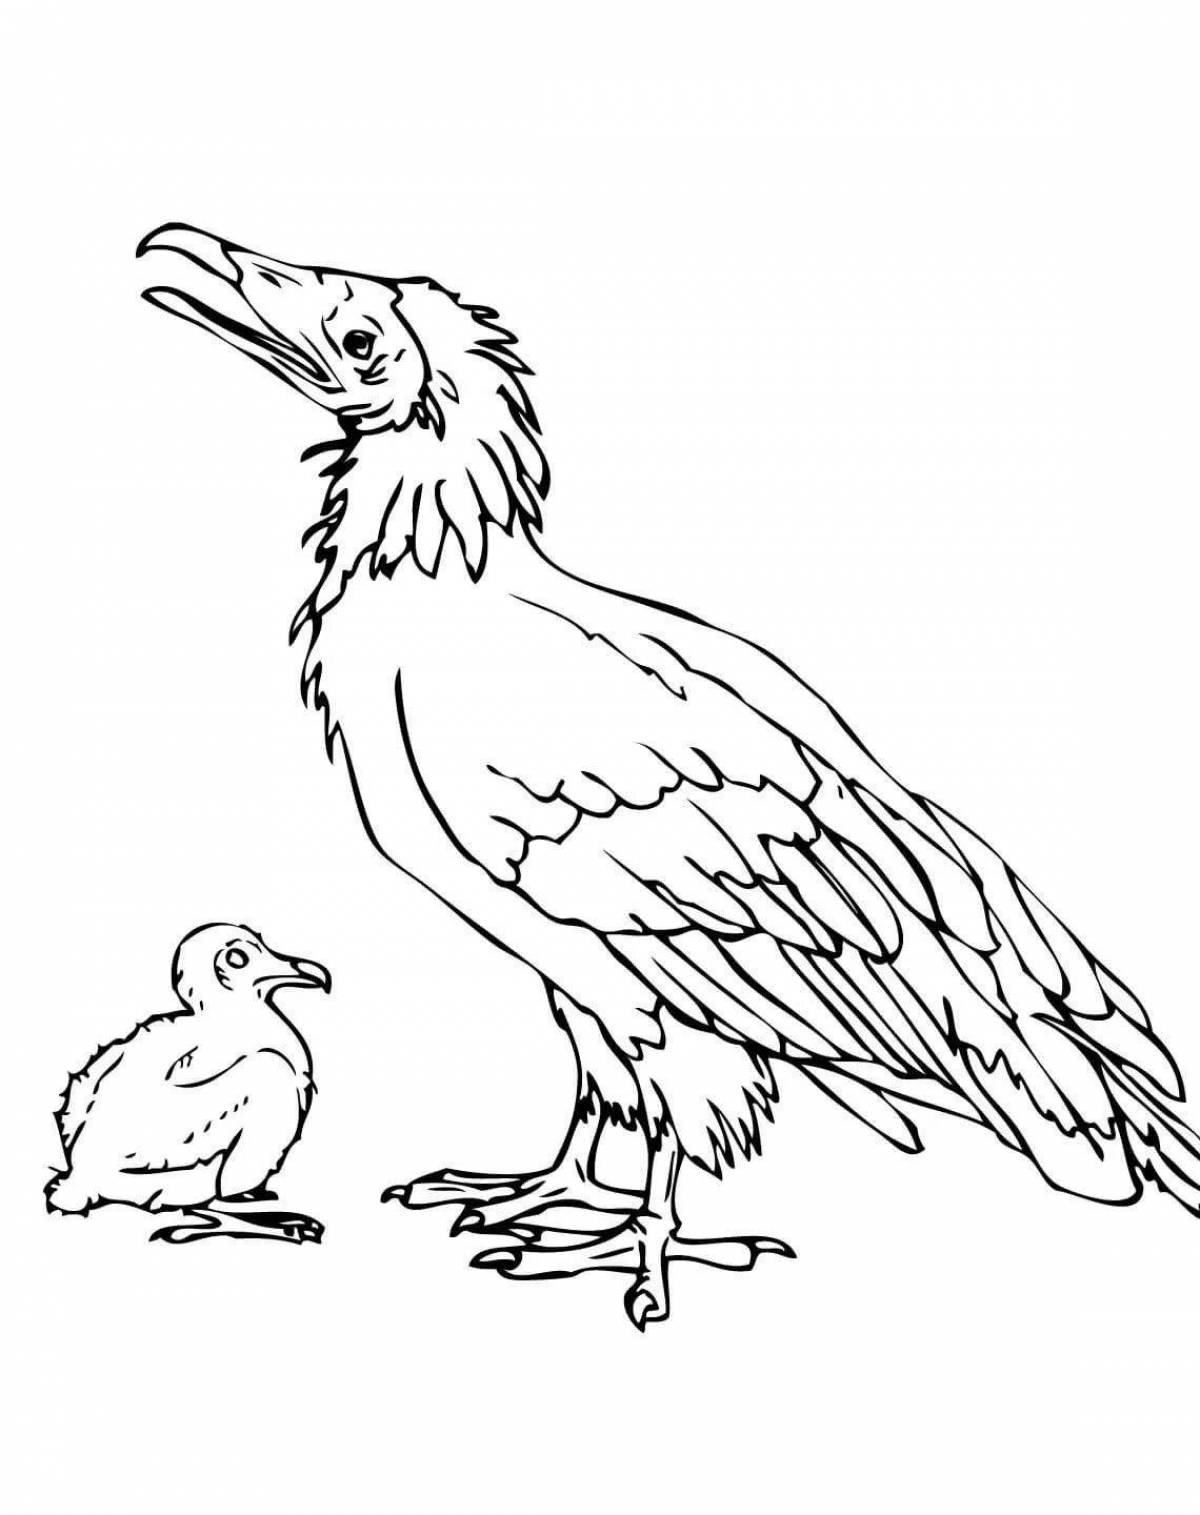 Coloring page magical dodo bird